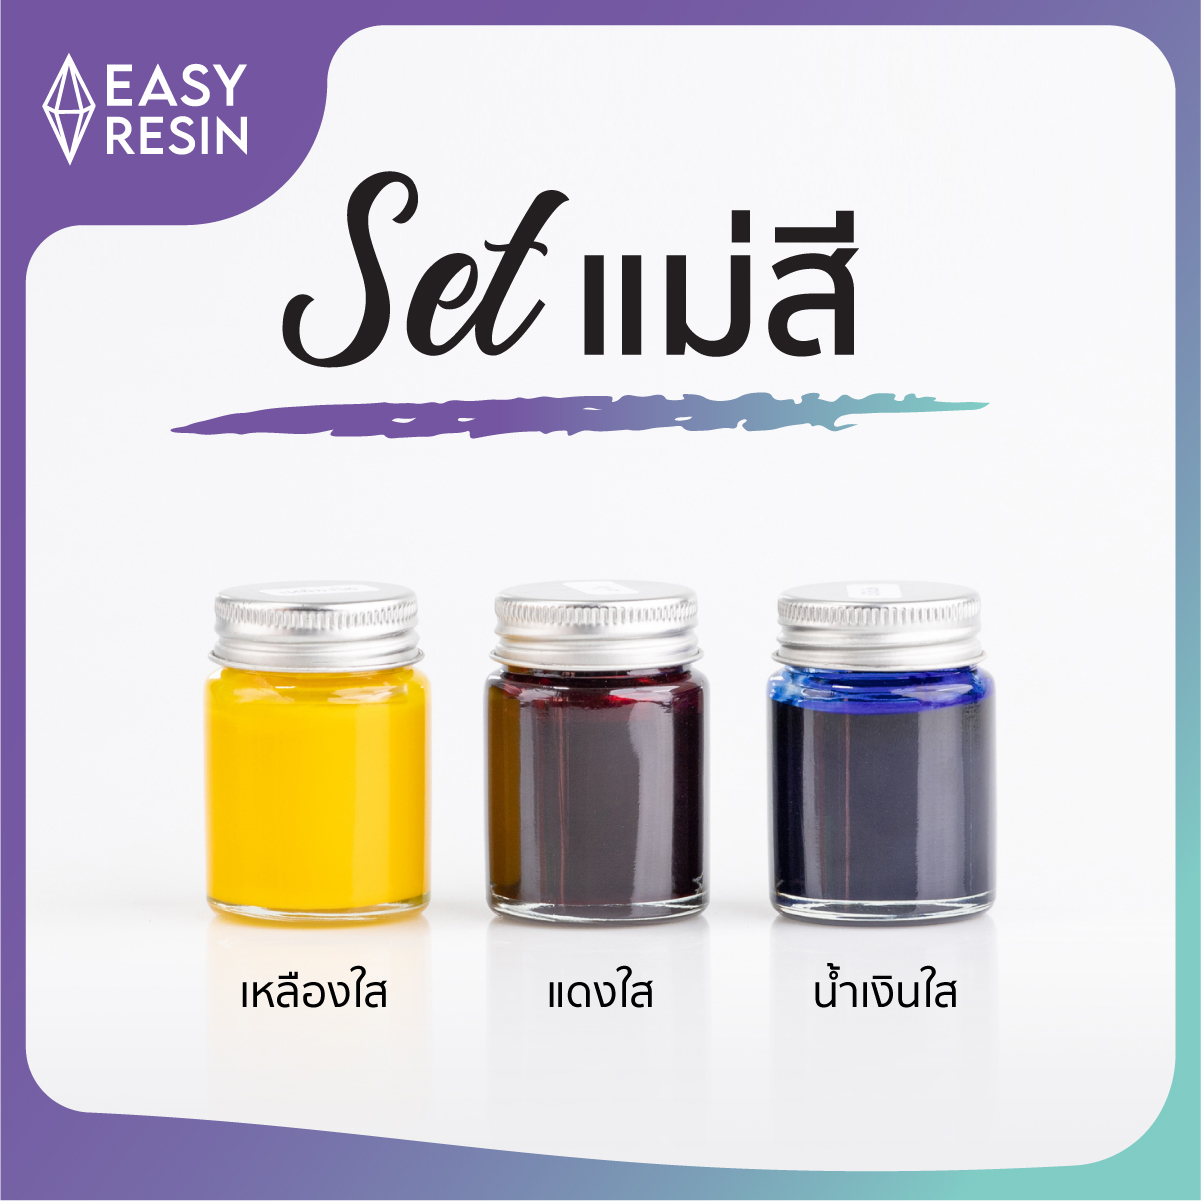 เซทสีผสมเรซิ่น 3 สี (ส่งฟรี) แดงใส น้ำเงินใส เหลืองใสใช้ผสมได้กับเรซิ่นทุกชนิด ใช้ง่าย สีสด-Easy Resin